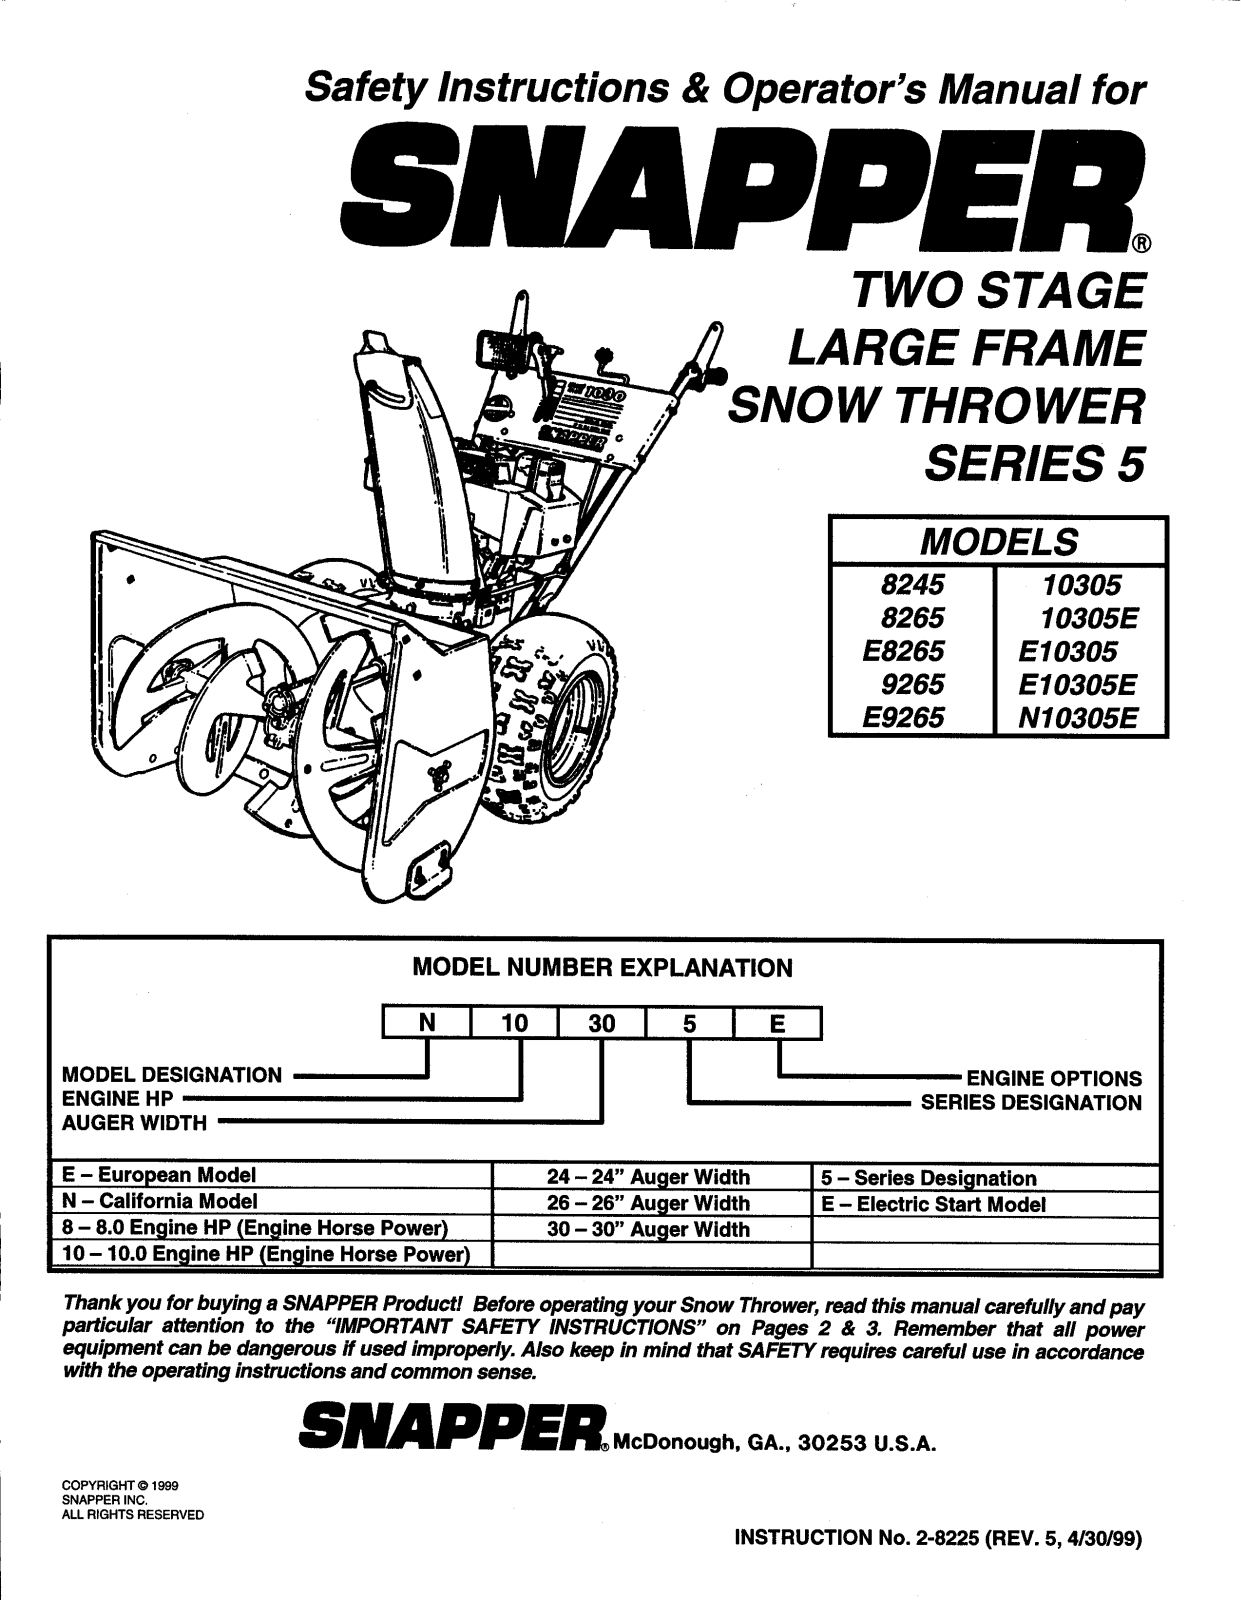 Snapper E9265, E8265, E10305E, E10305, 8265 Owner’s Manual